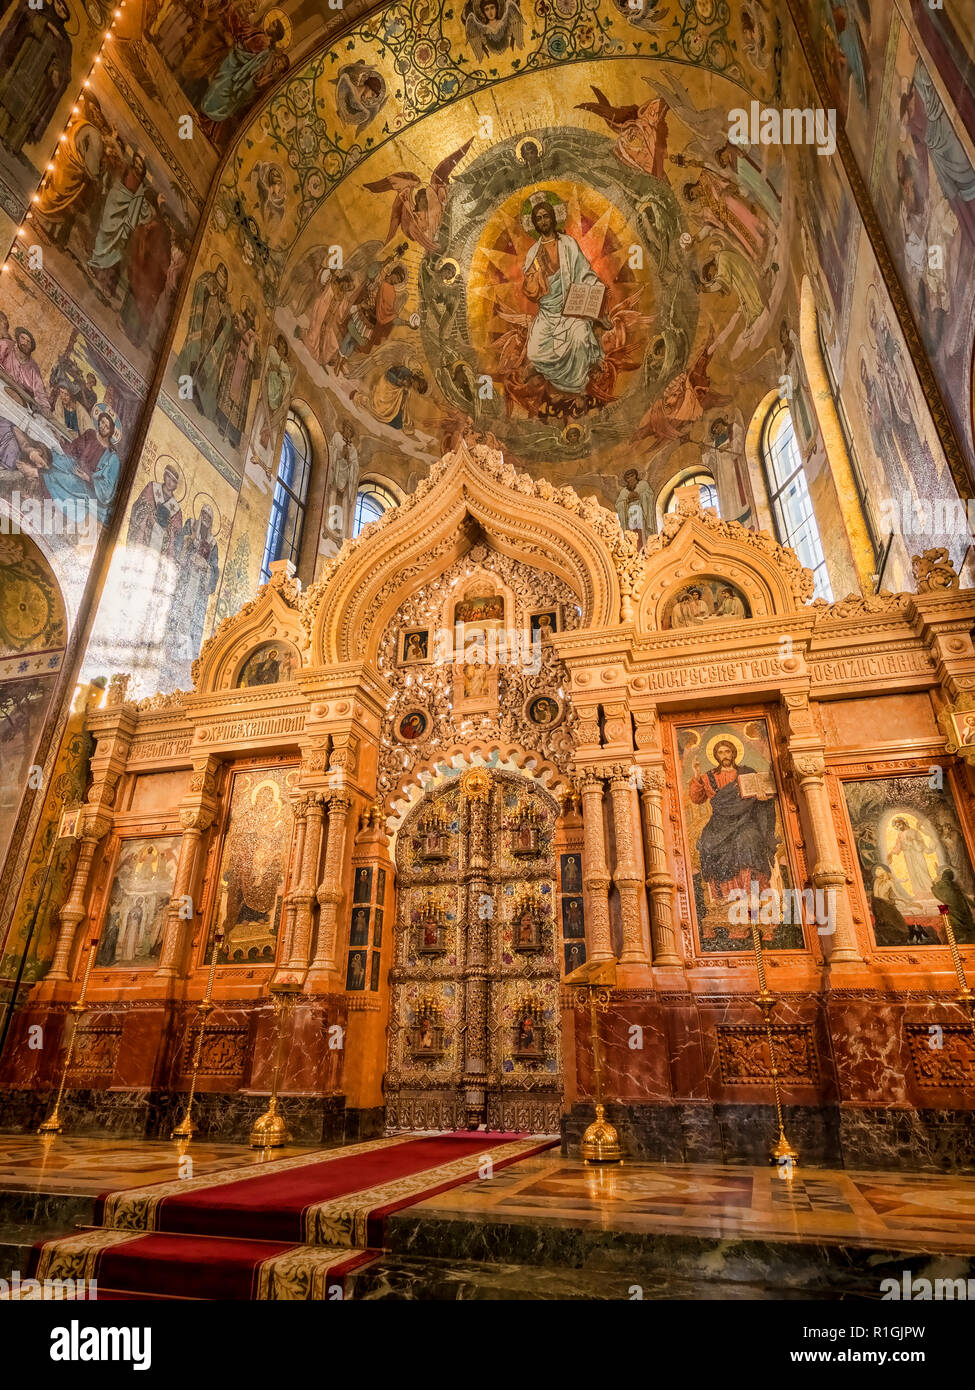 18 Septembre 2018 : St Petersburg, Russie - l'iconostase dorée ou retable, église du Sauveur sur le Sang Versé, appelé ainsi parce qu'il Banque D'Images